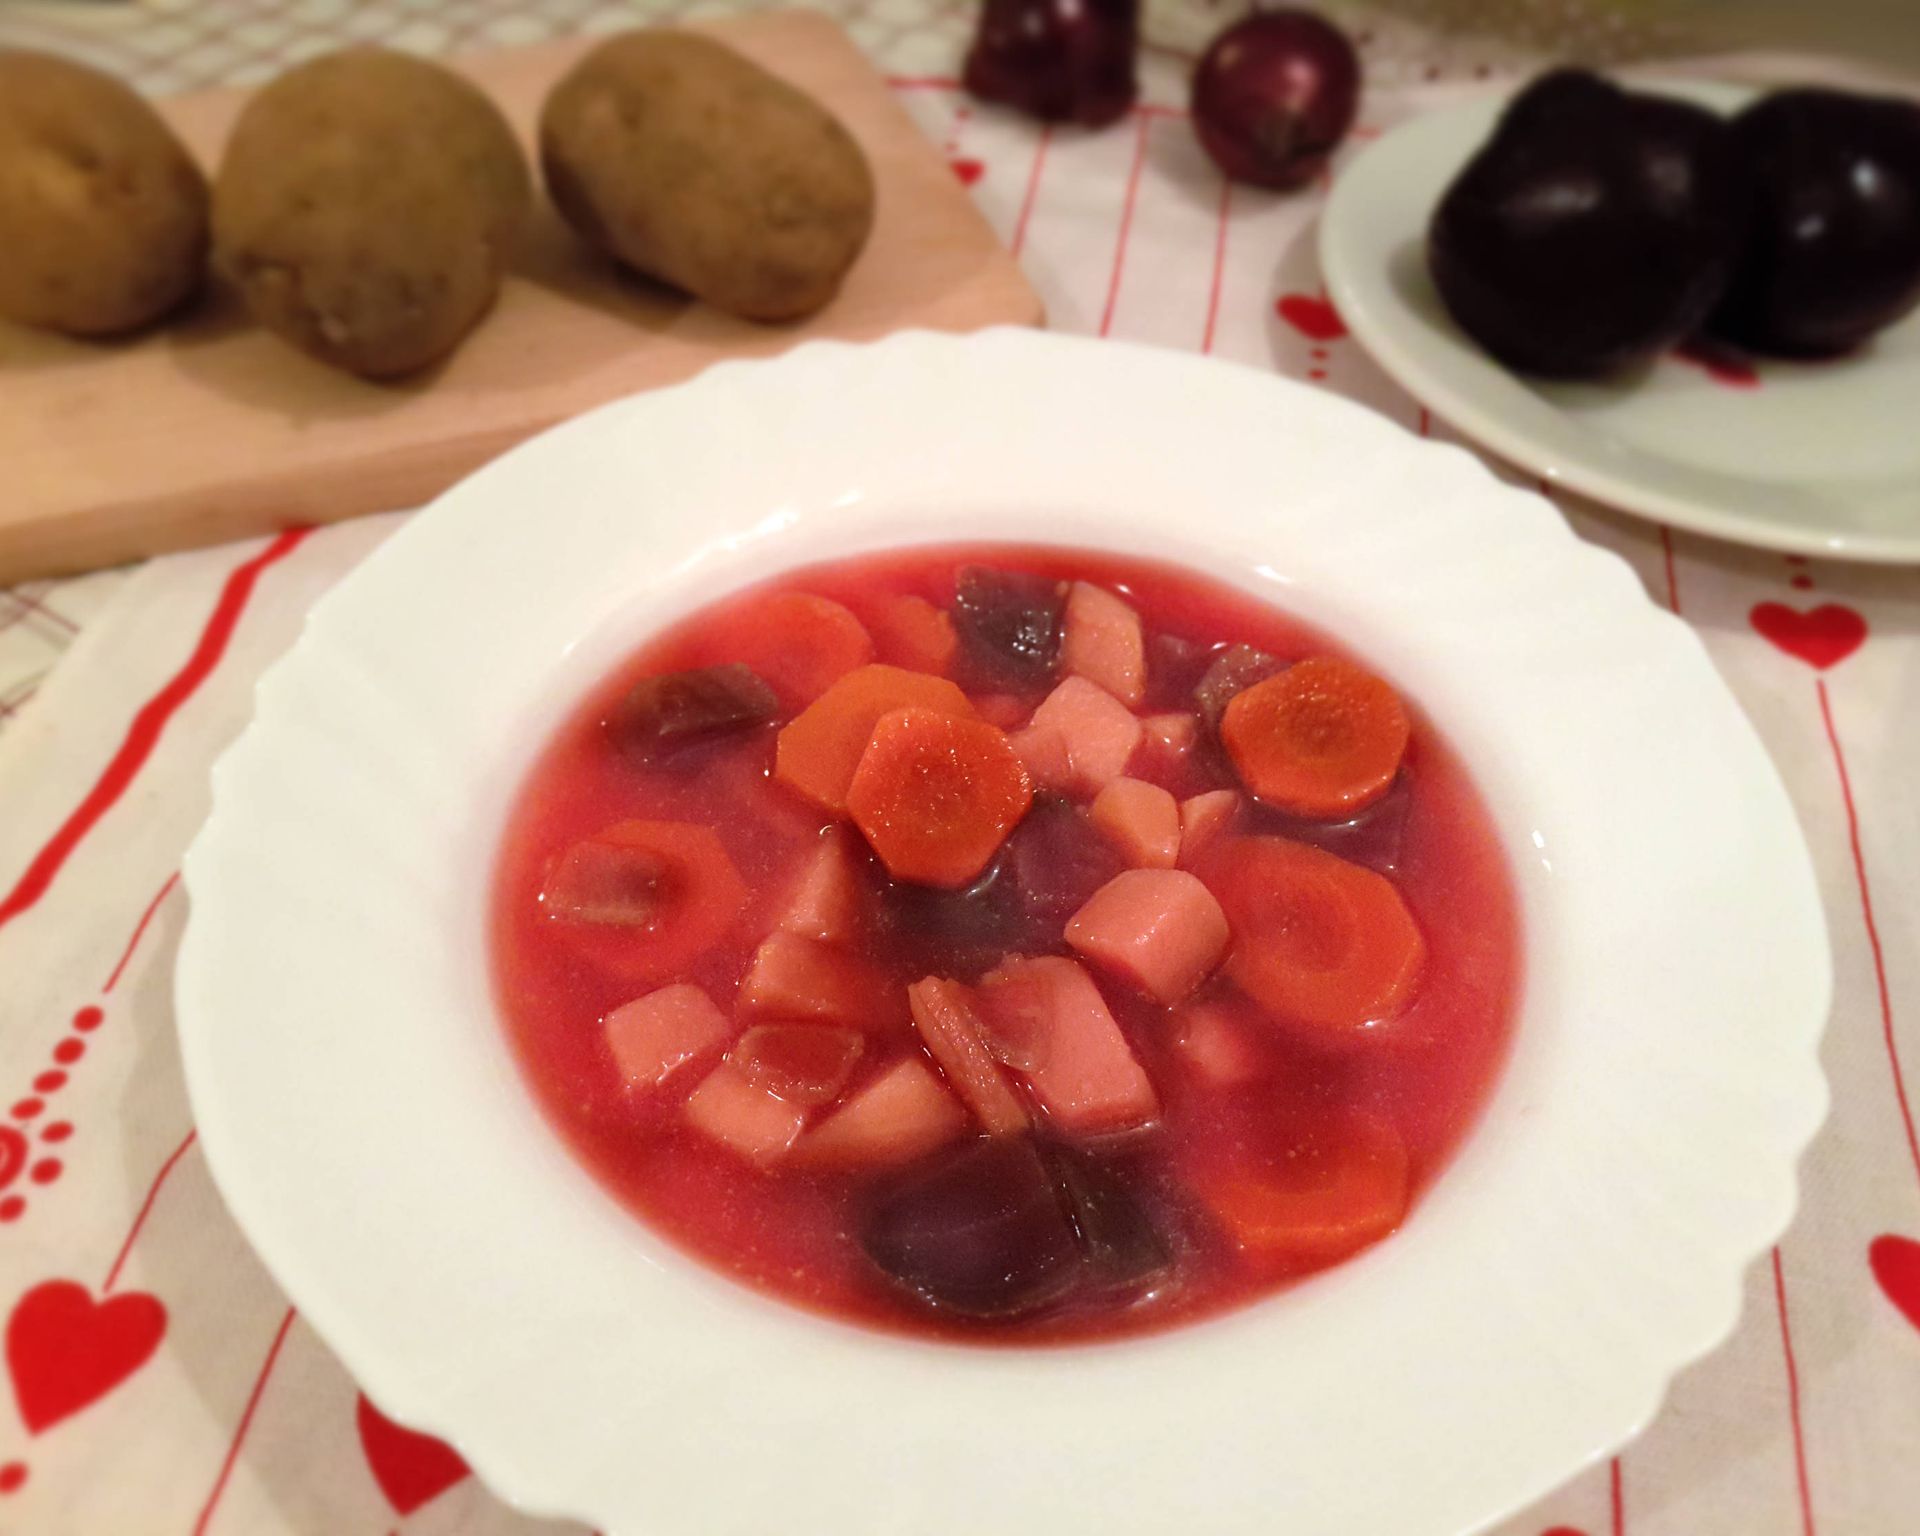 Na bielom tanieri naservírovaná polievka z červenej repy, mrkvy, zemiakov a cibule. V pozadí sú zemiaky surové a cvikla.